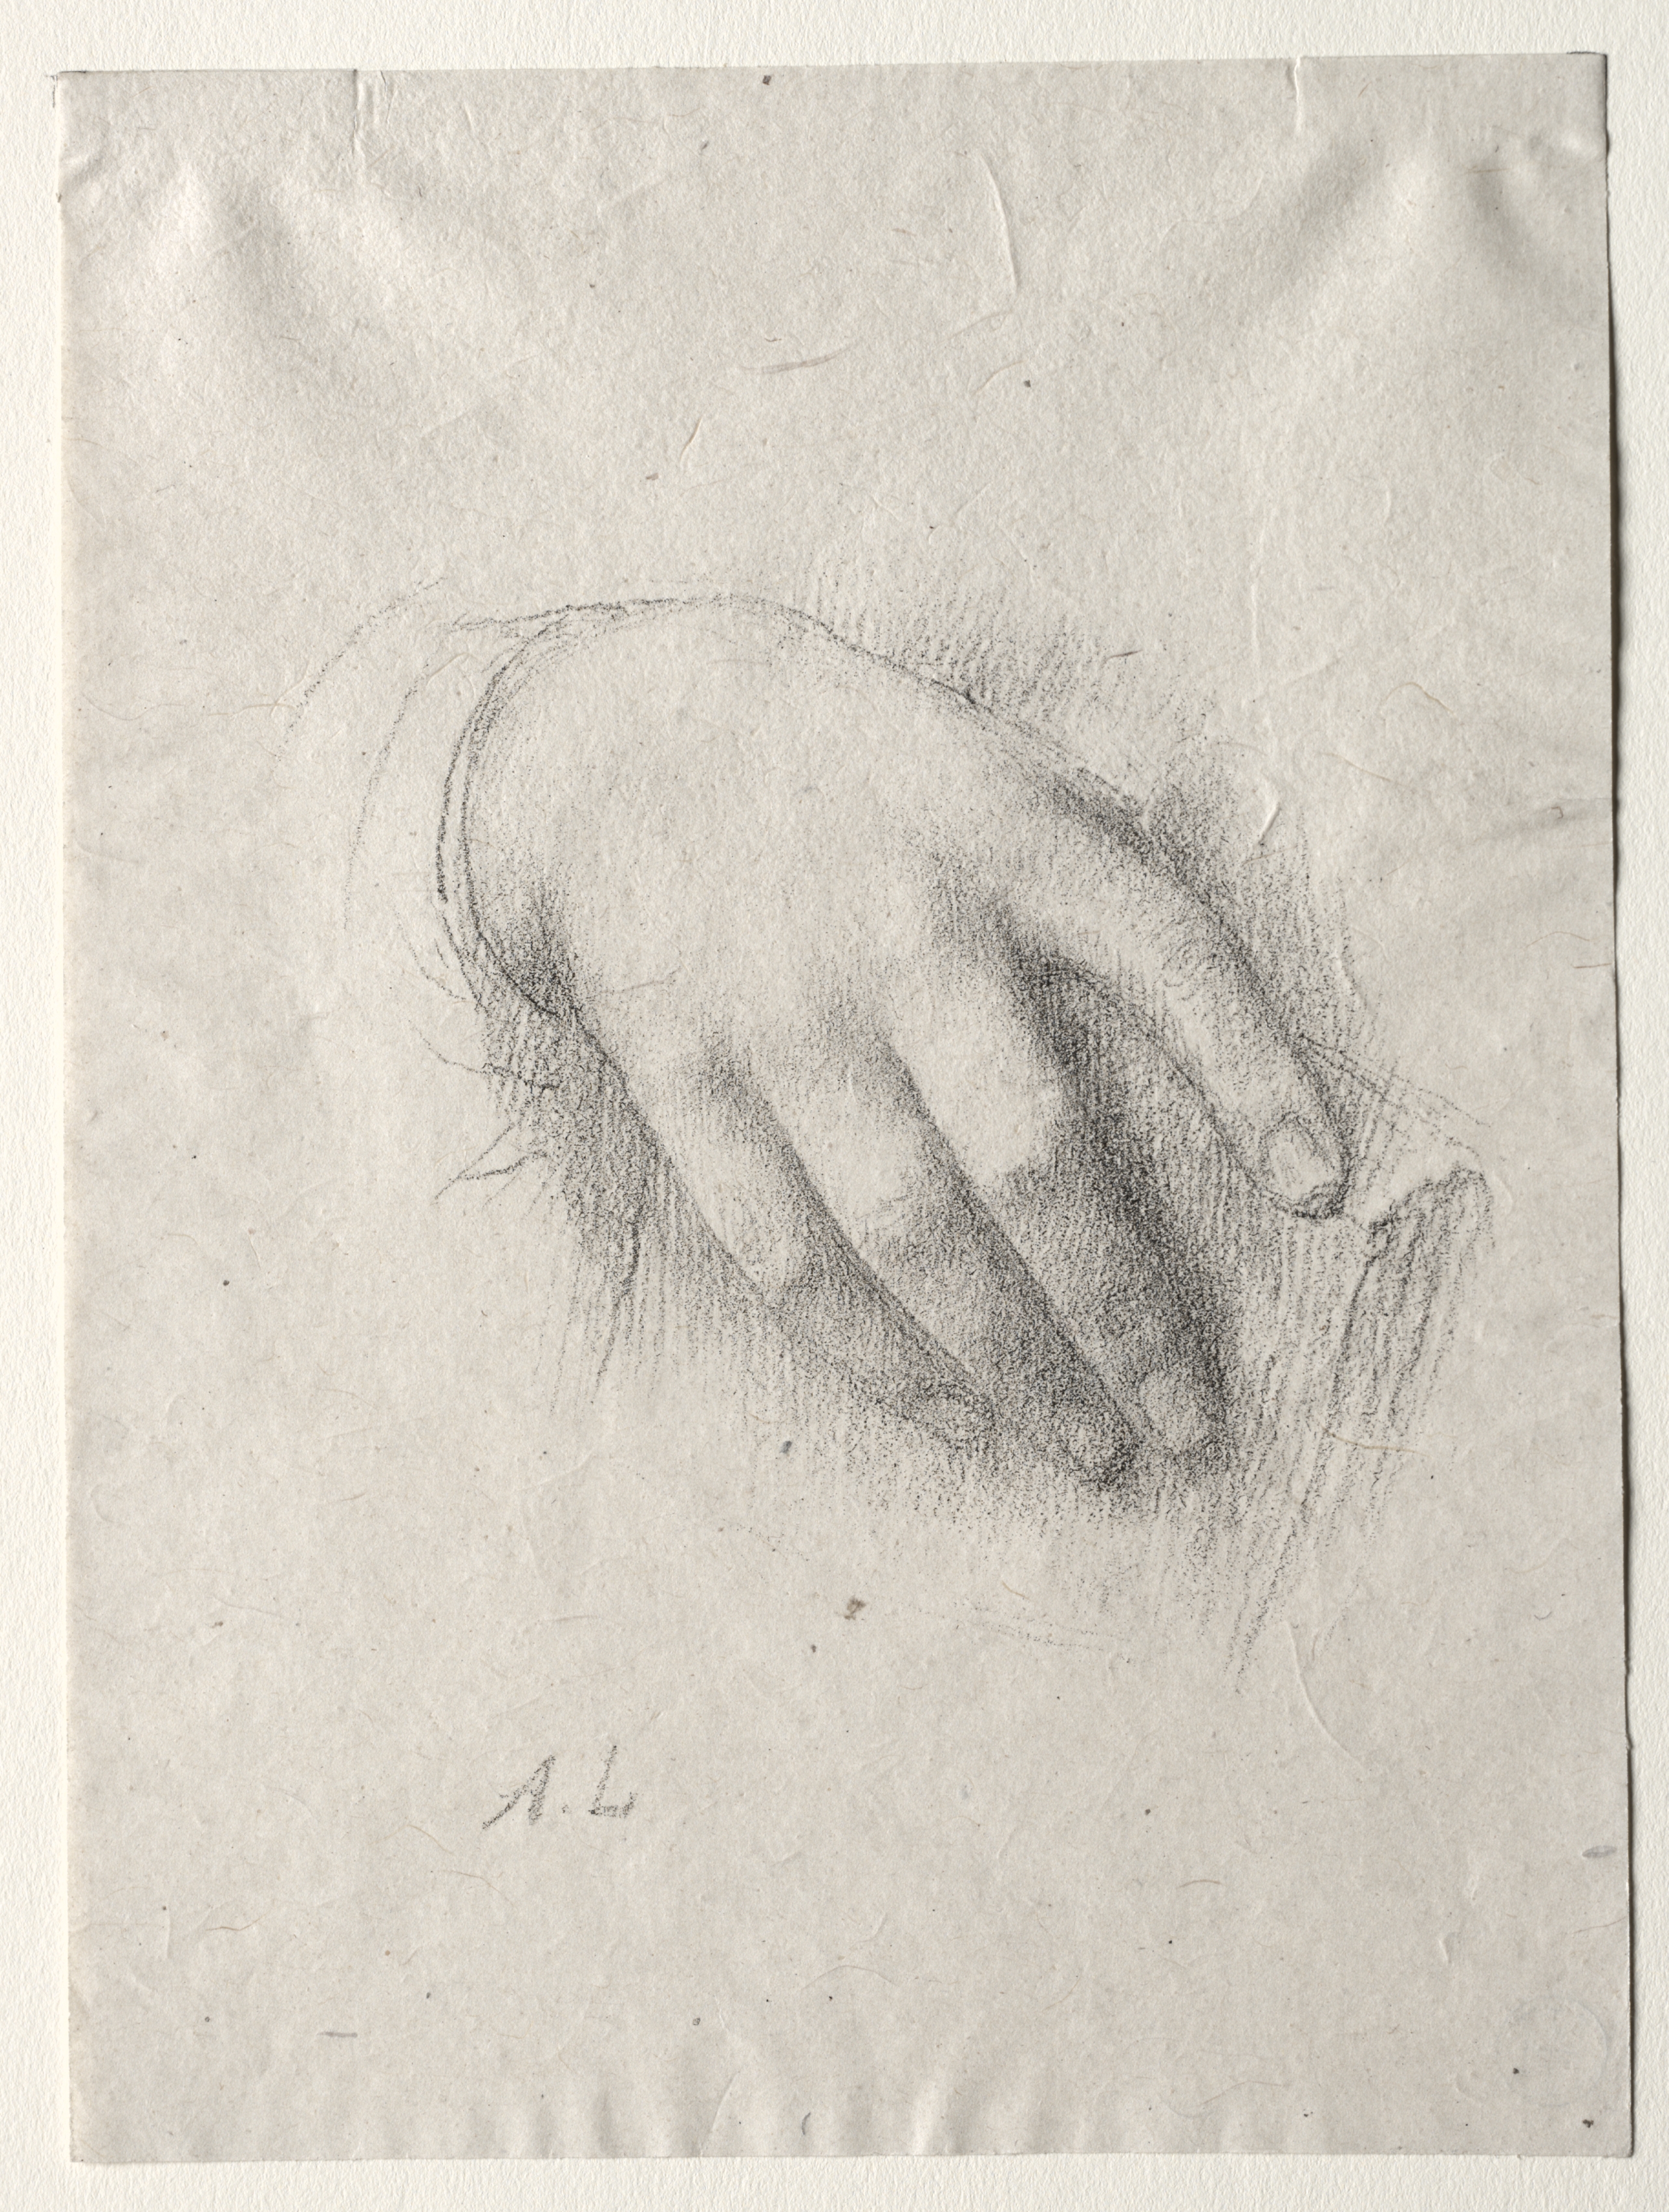 Study of Hands